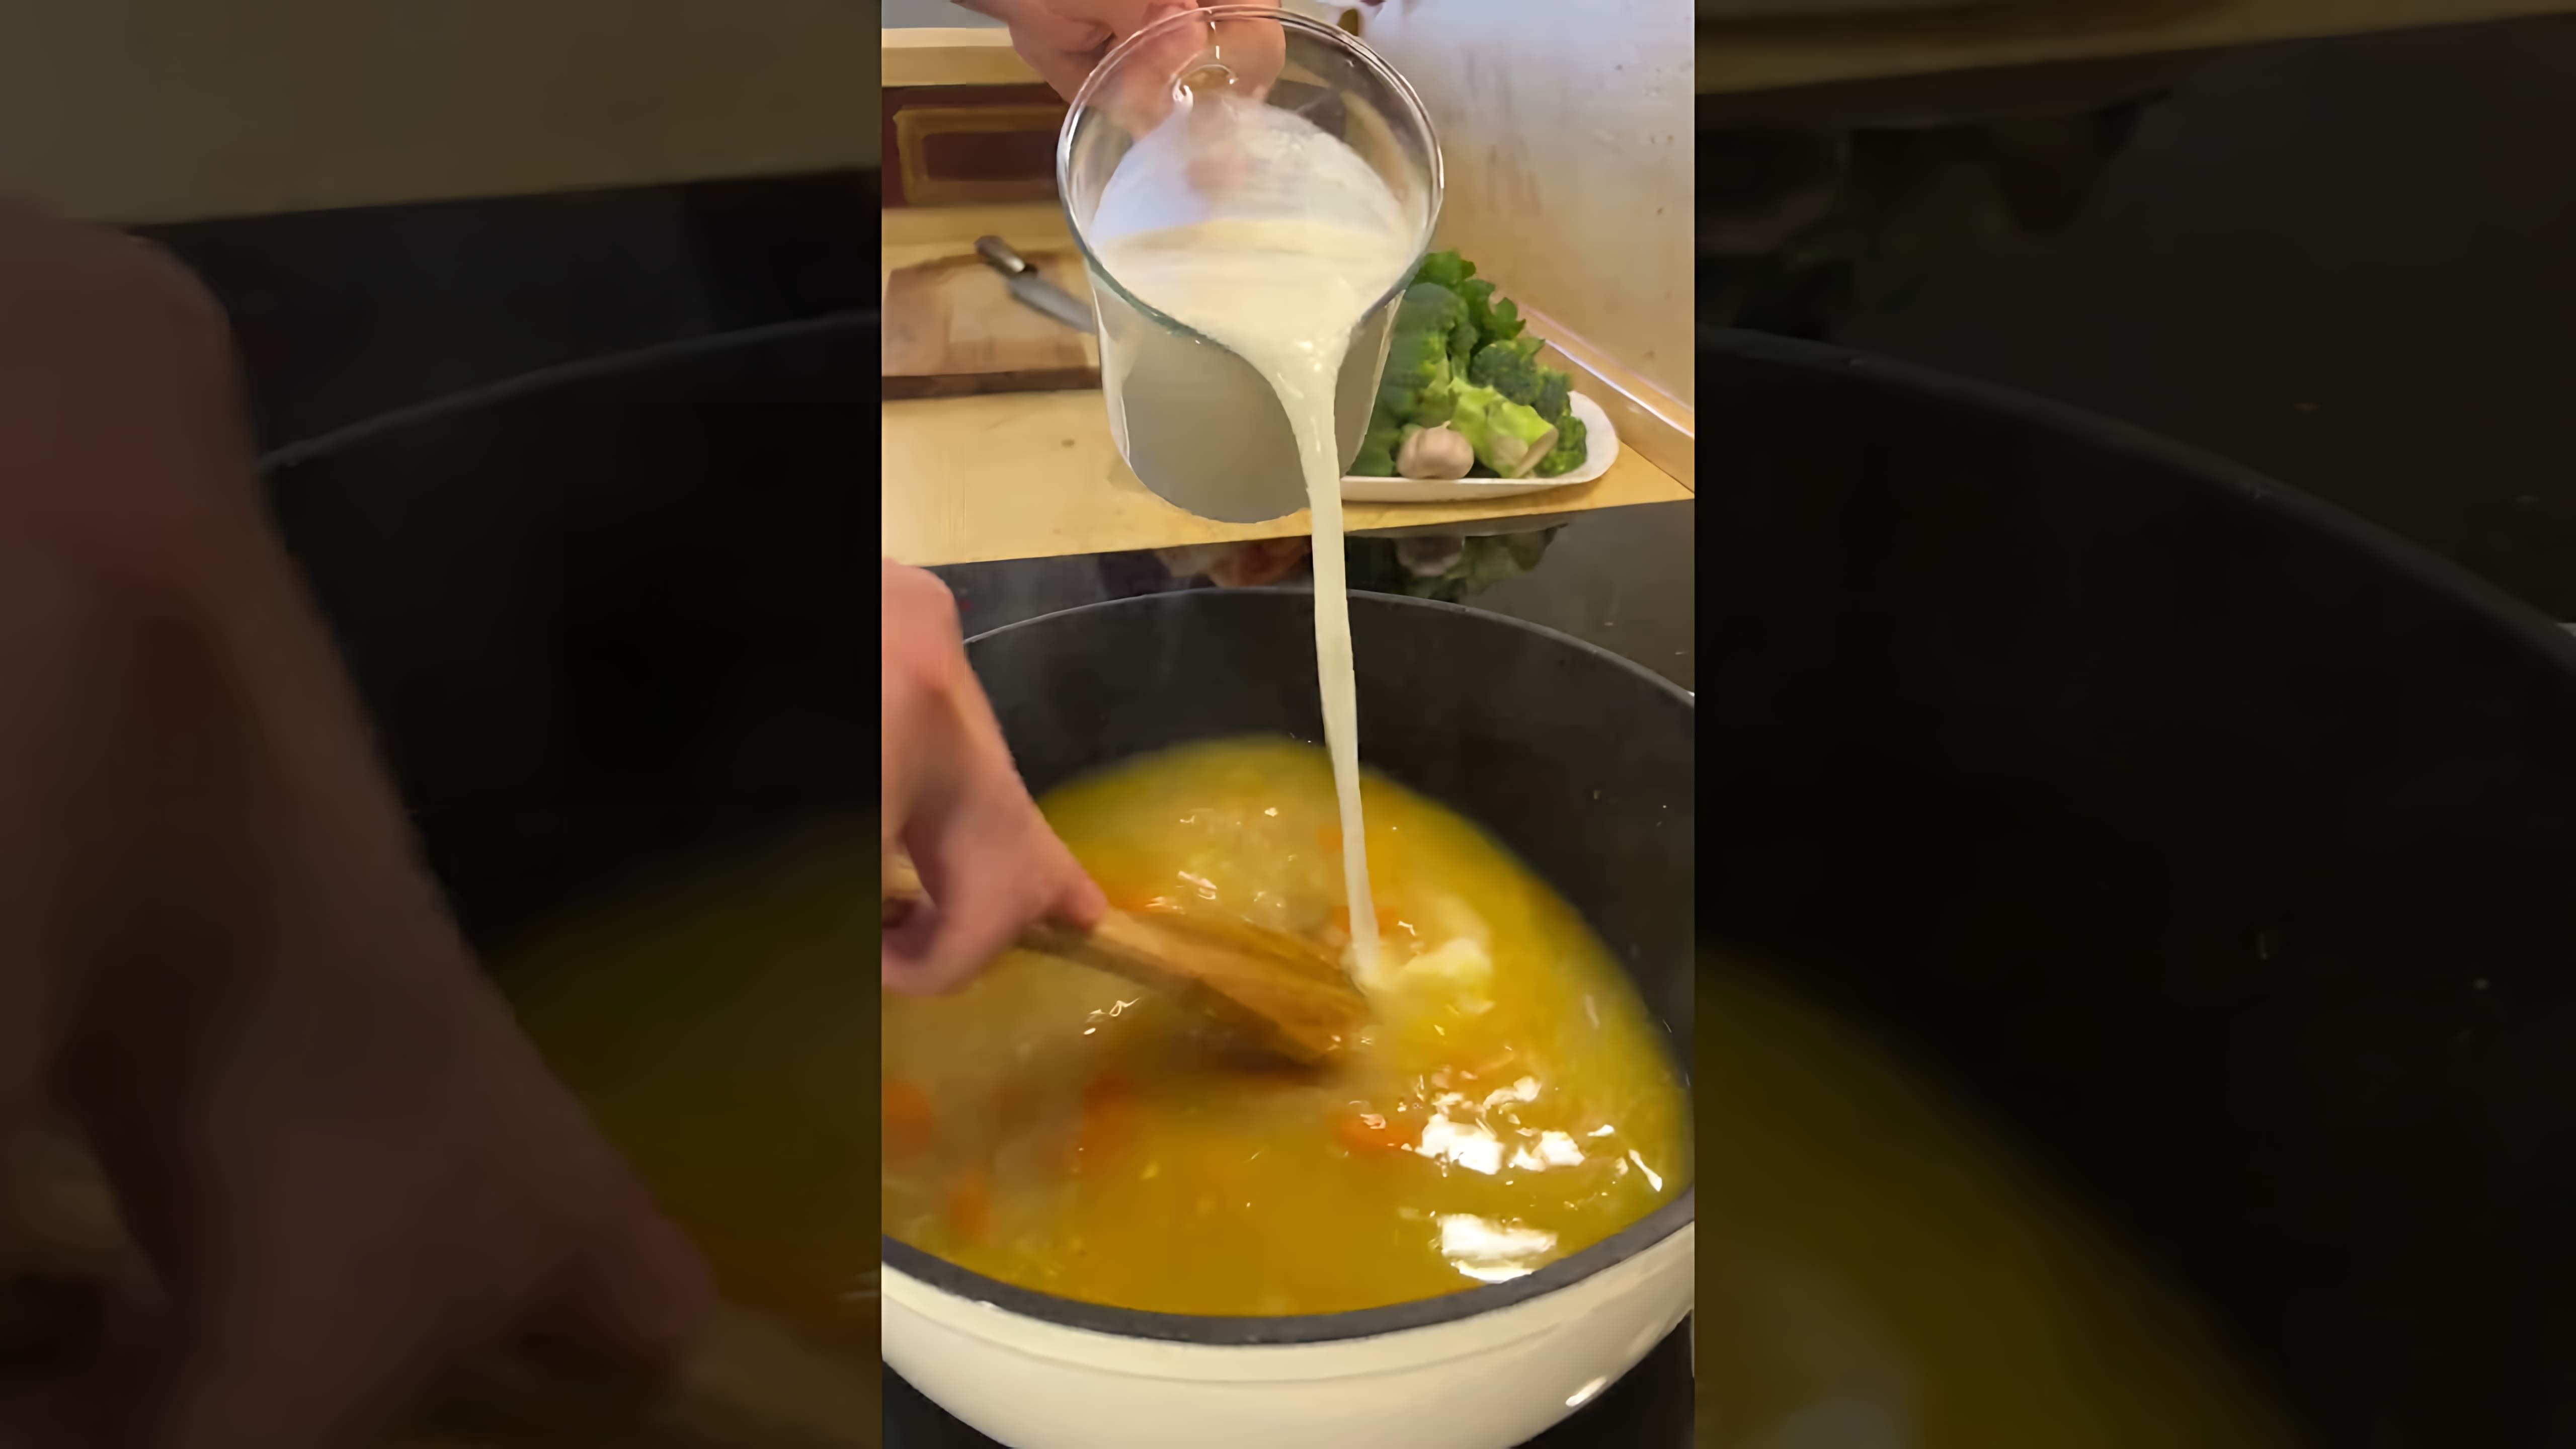 Сливочный суп - это вкусное и питательное блюдо, которое можно приготовить в домашних условиях